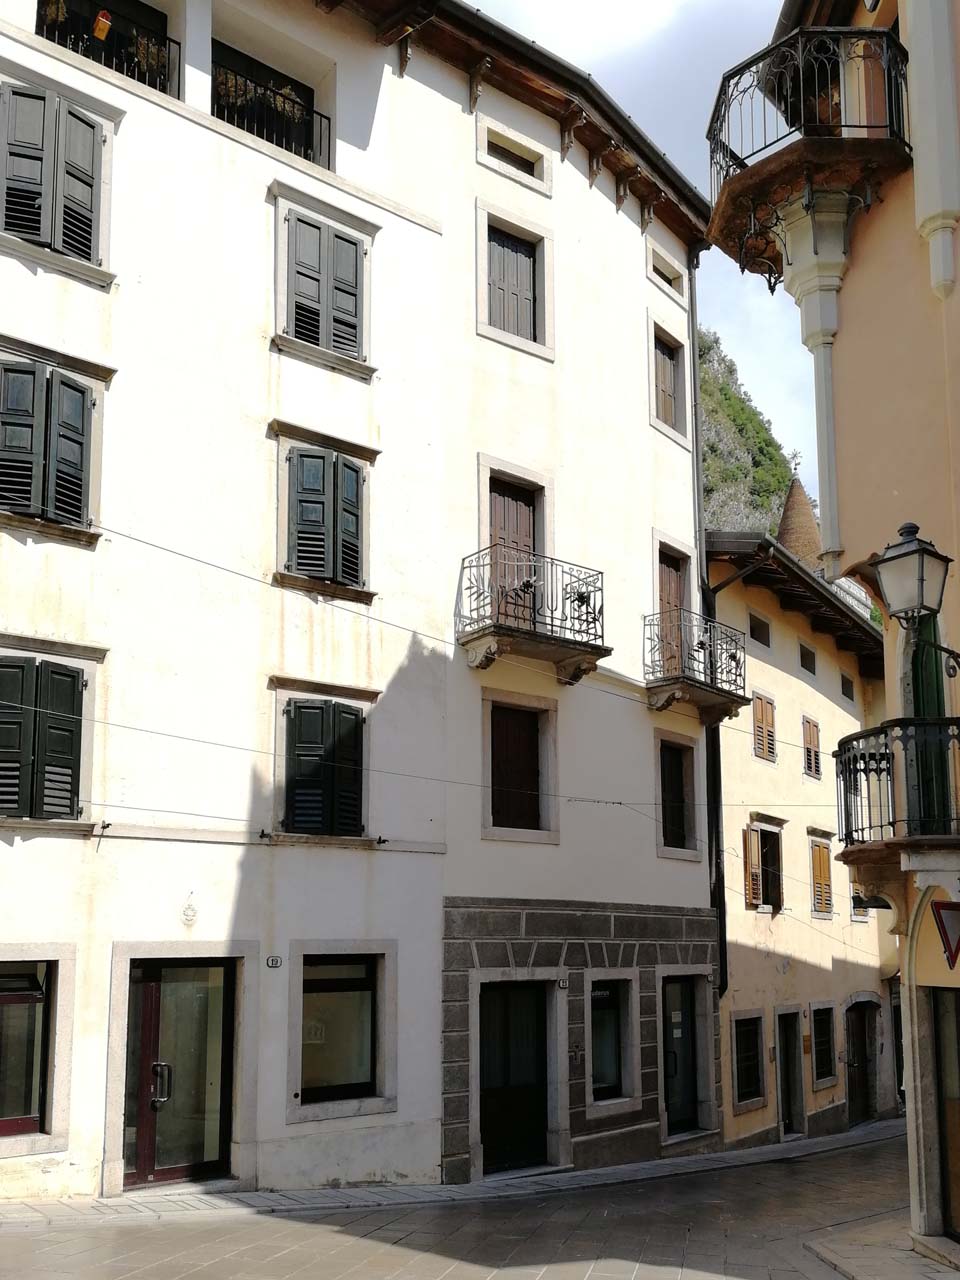 Immobile sito in Via Bini 27, 29 (ora civici 21, 23) (palazzetto) - Gemona del Friuli (UD) 